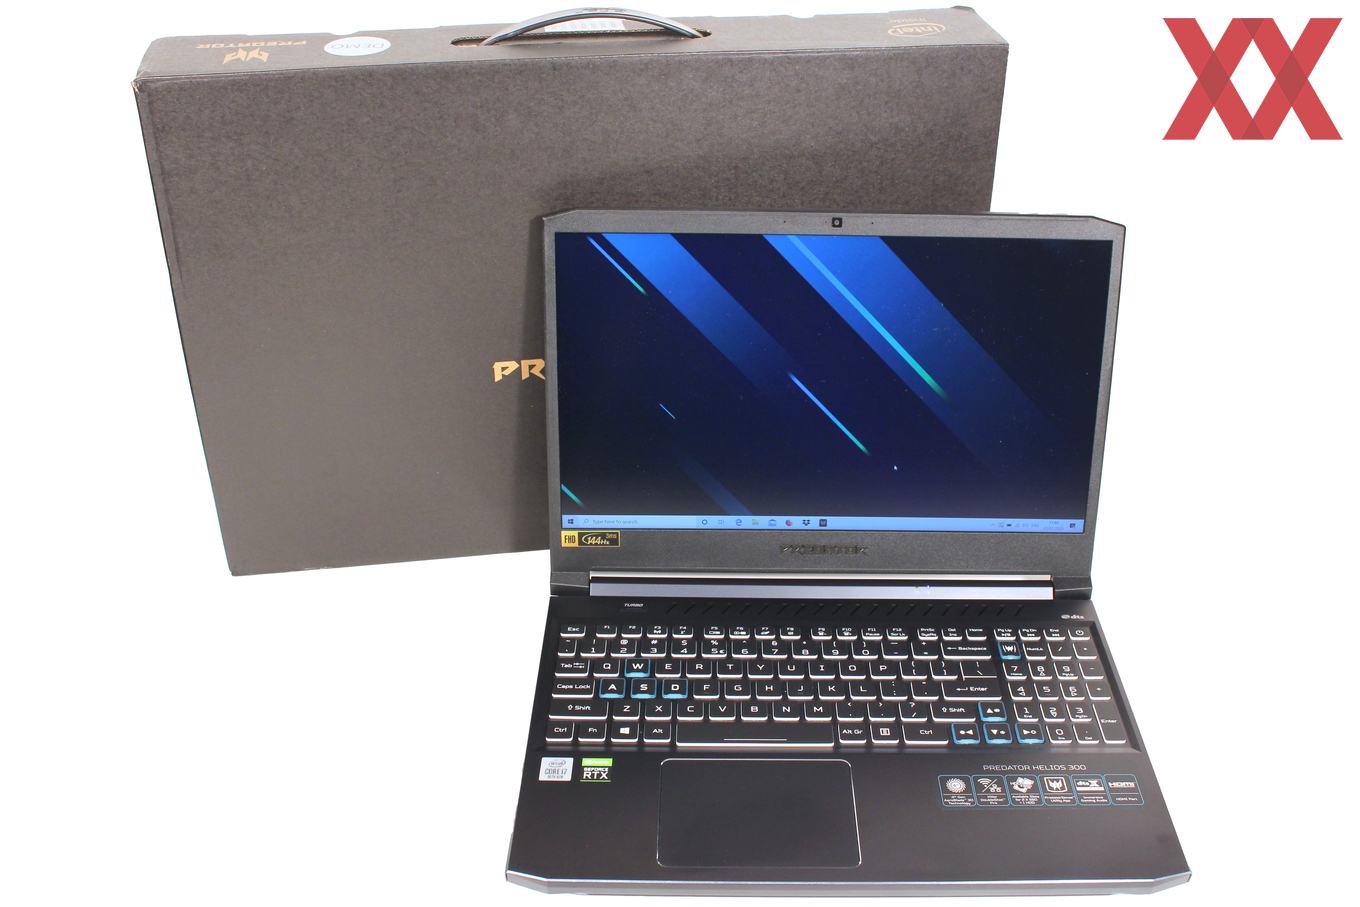 Купить Игровой Ноутбук Acer Predator 300